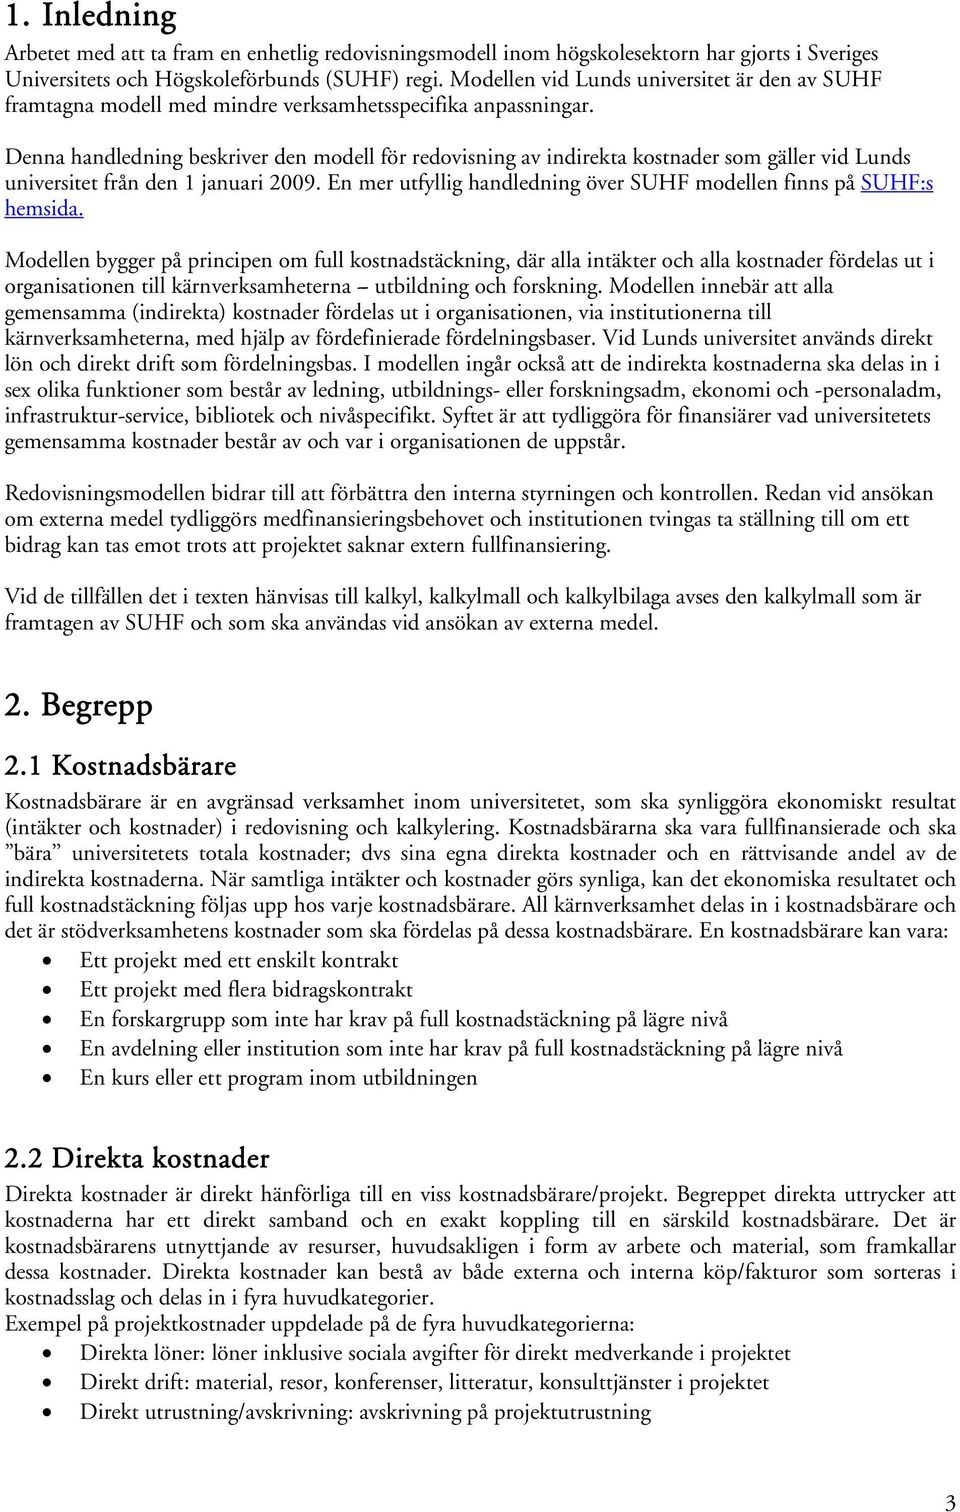 Denna handledning beskriver den modell för redovisning av indirekta kostnader som gäller vid Lunds universitet från den 1 januari 2009.